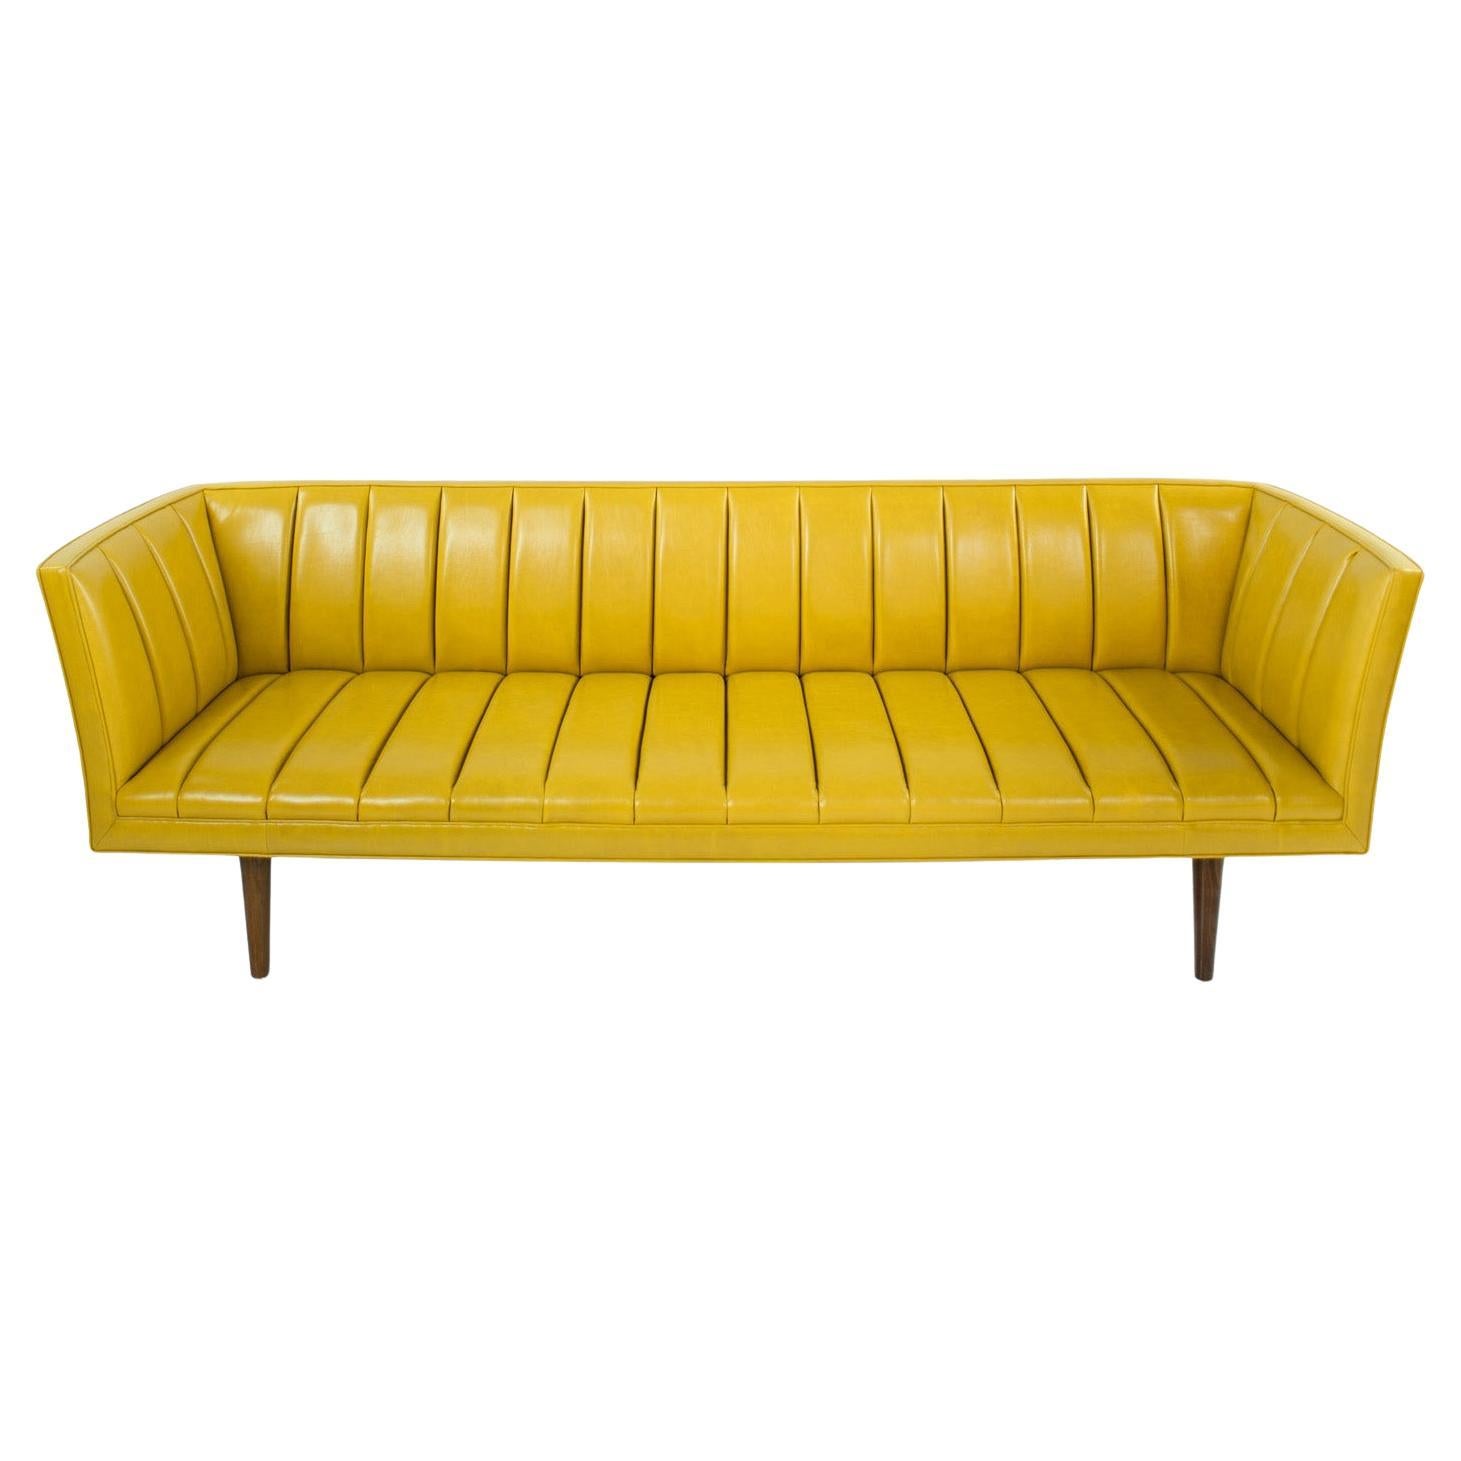 KGBL Famechon Sofa For Sale